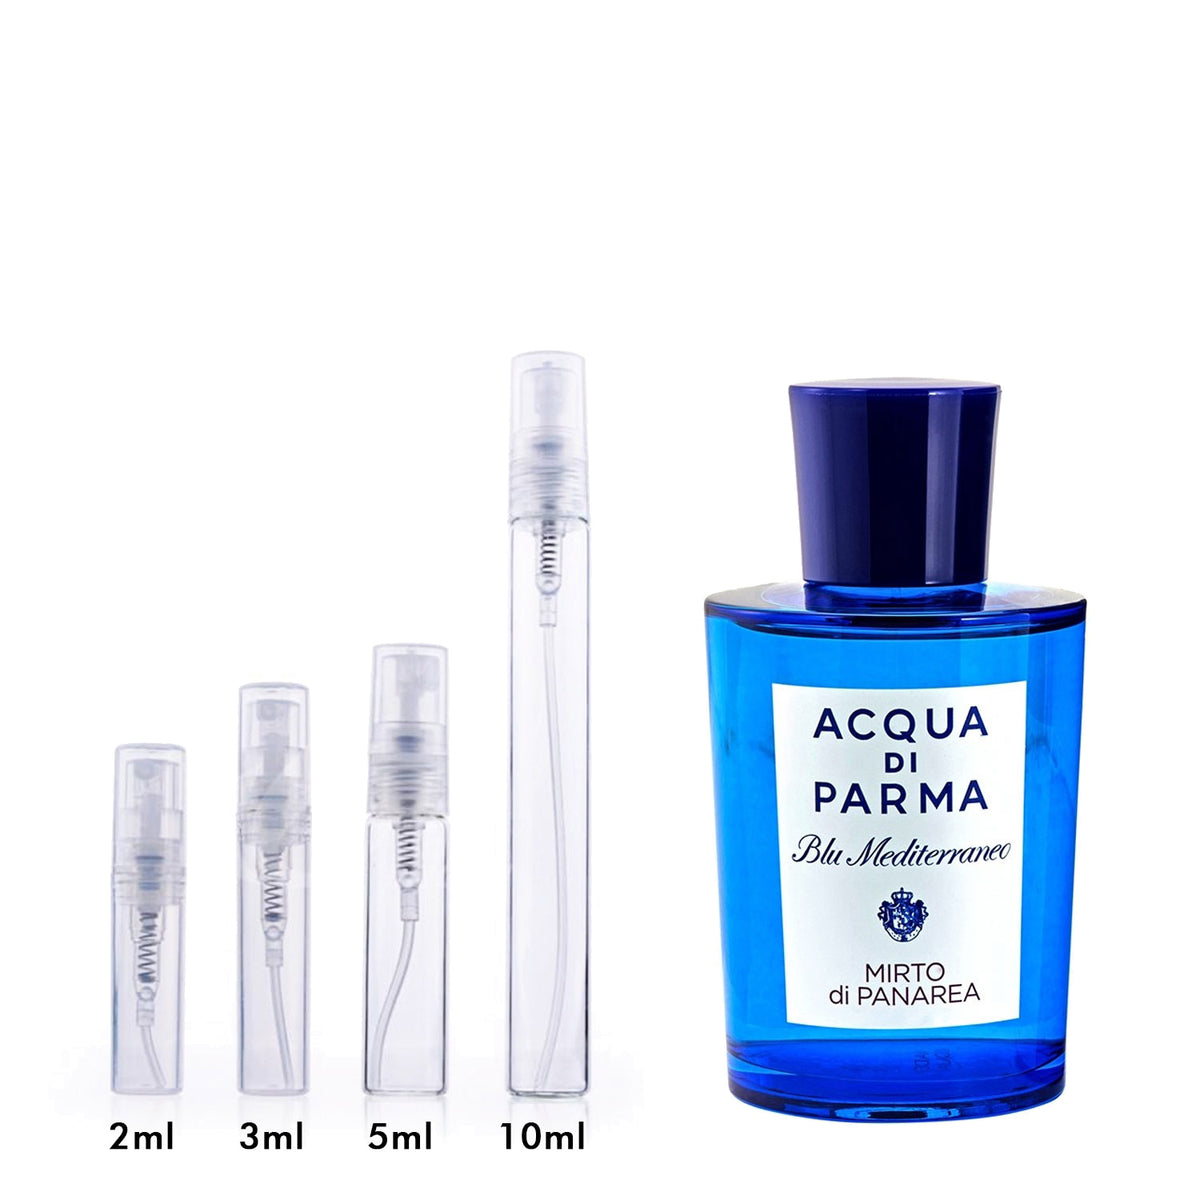 Acqua di parma Blue Mediterraneo - Mirto di Panarea Acqua di Parma perfume  - a fragrance for women and men 2008